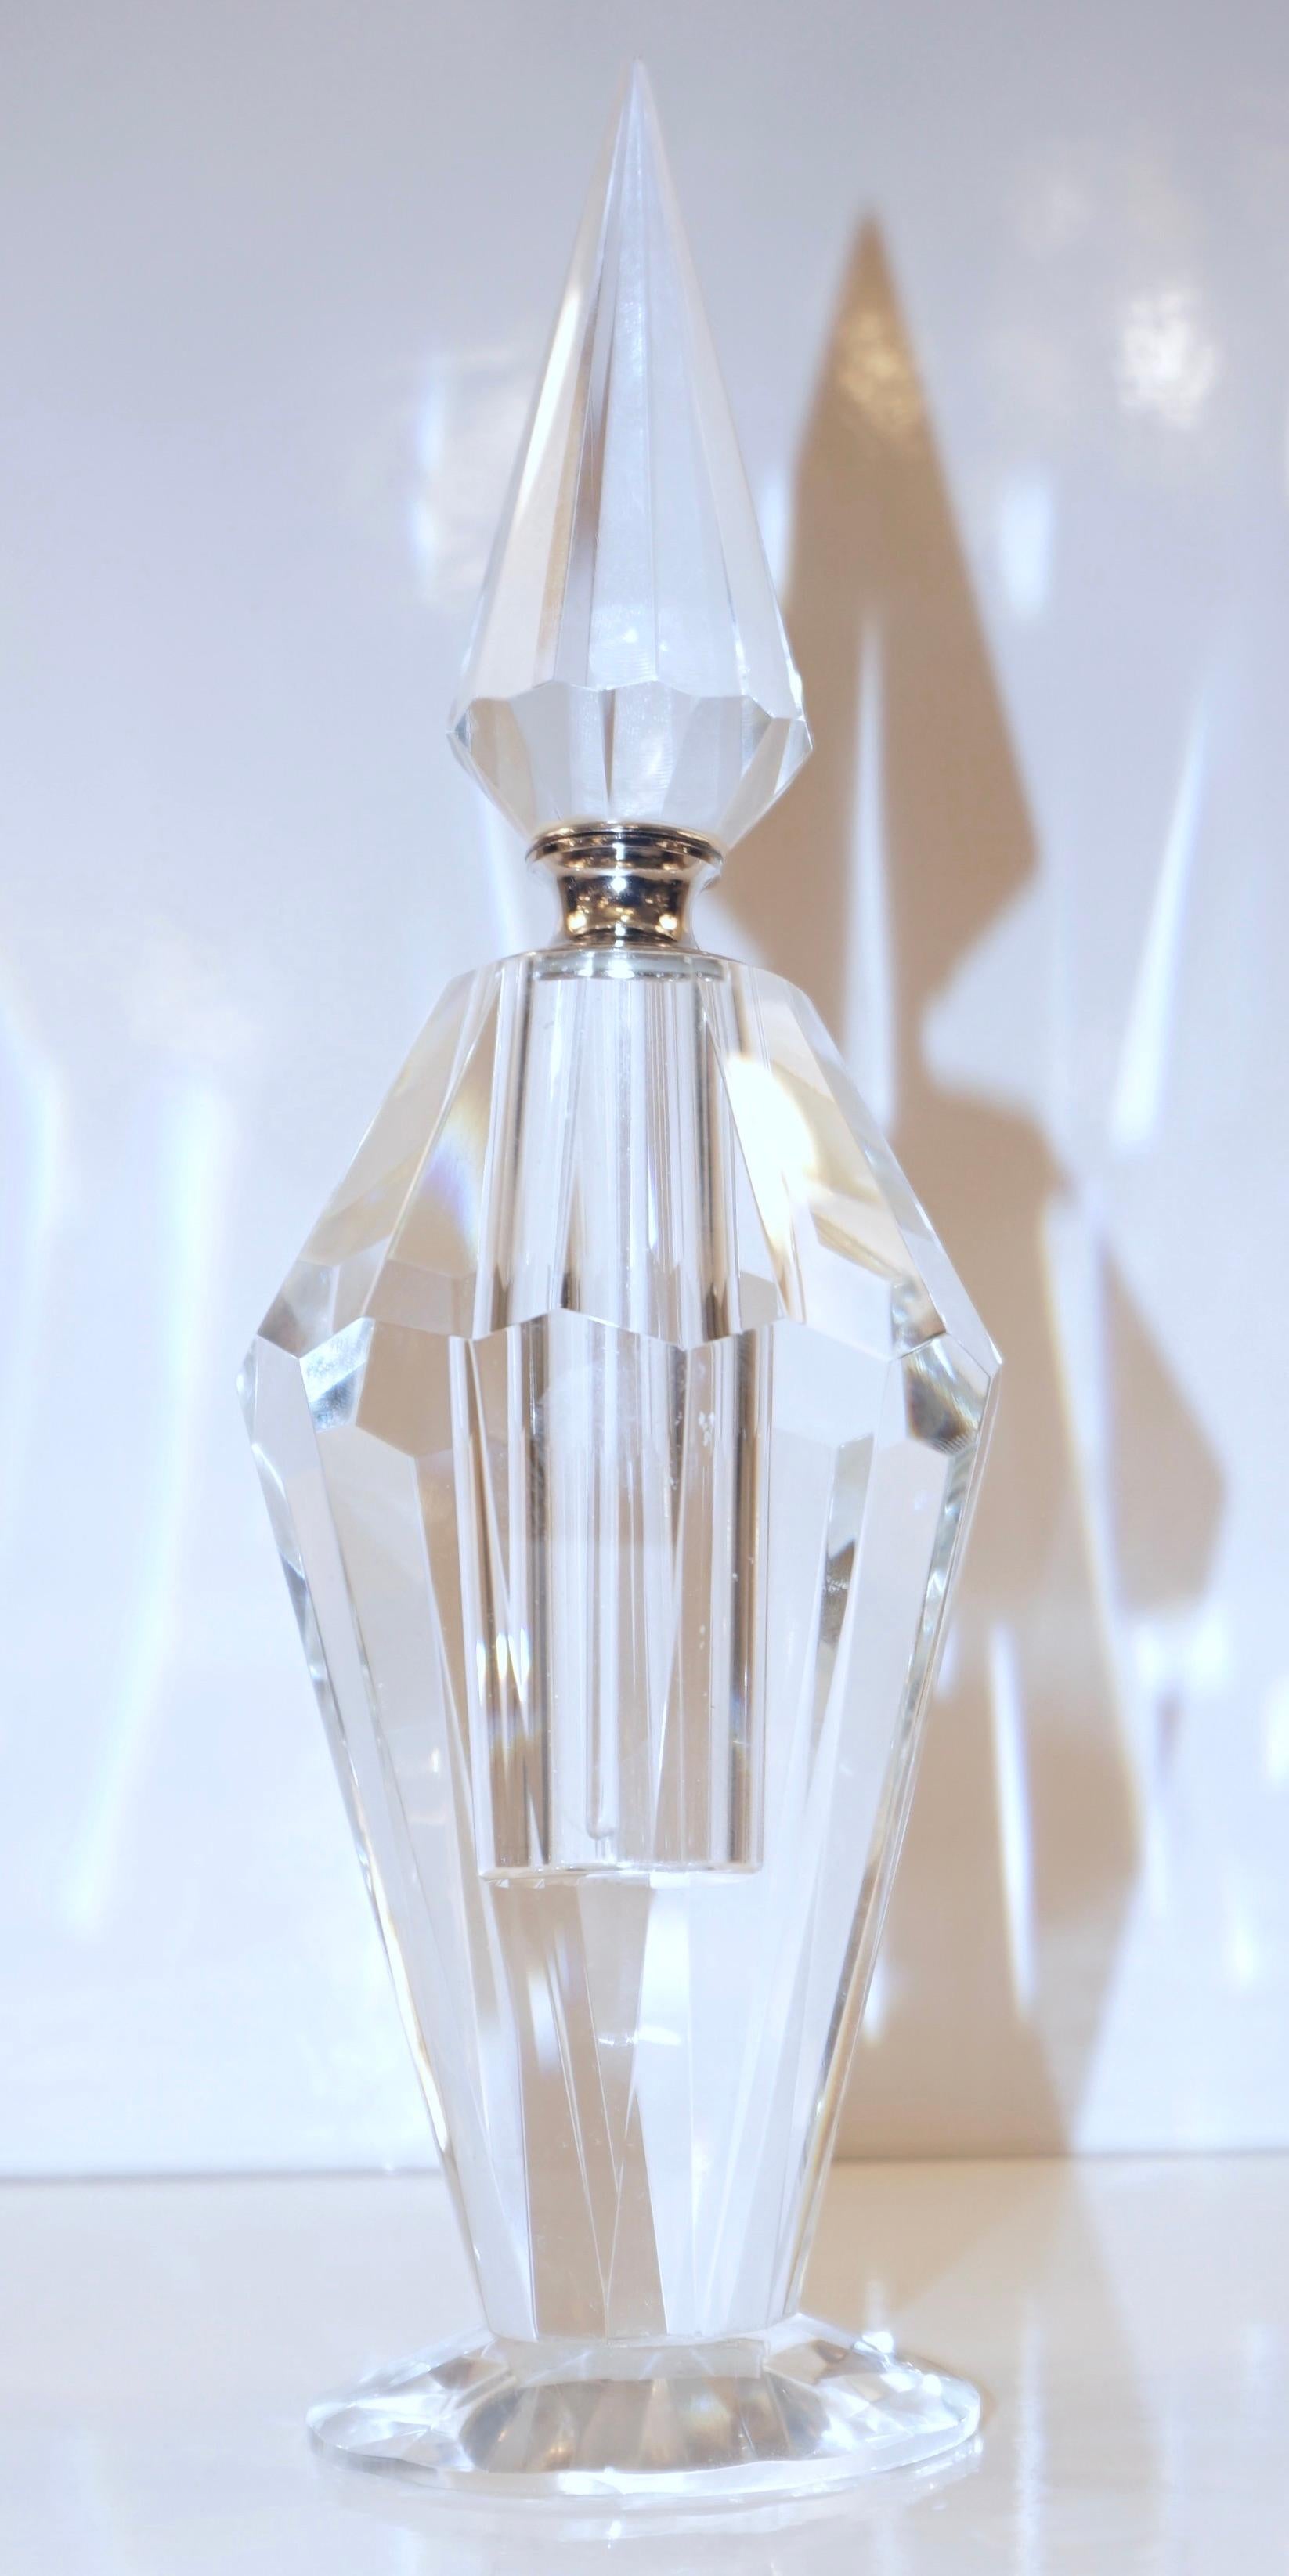 Dieser elegante und raffinierte Parfümflakon, ein hochwertiges Kristallprodukt mit Art-Déco-Flair und Hollywood-Regency-Glamour, erinnert mit seiner prismatischen, geometrischen Pyramidenform an einen Diamanten, denn seine zahlreichen